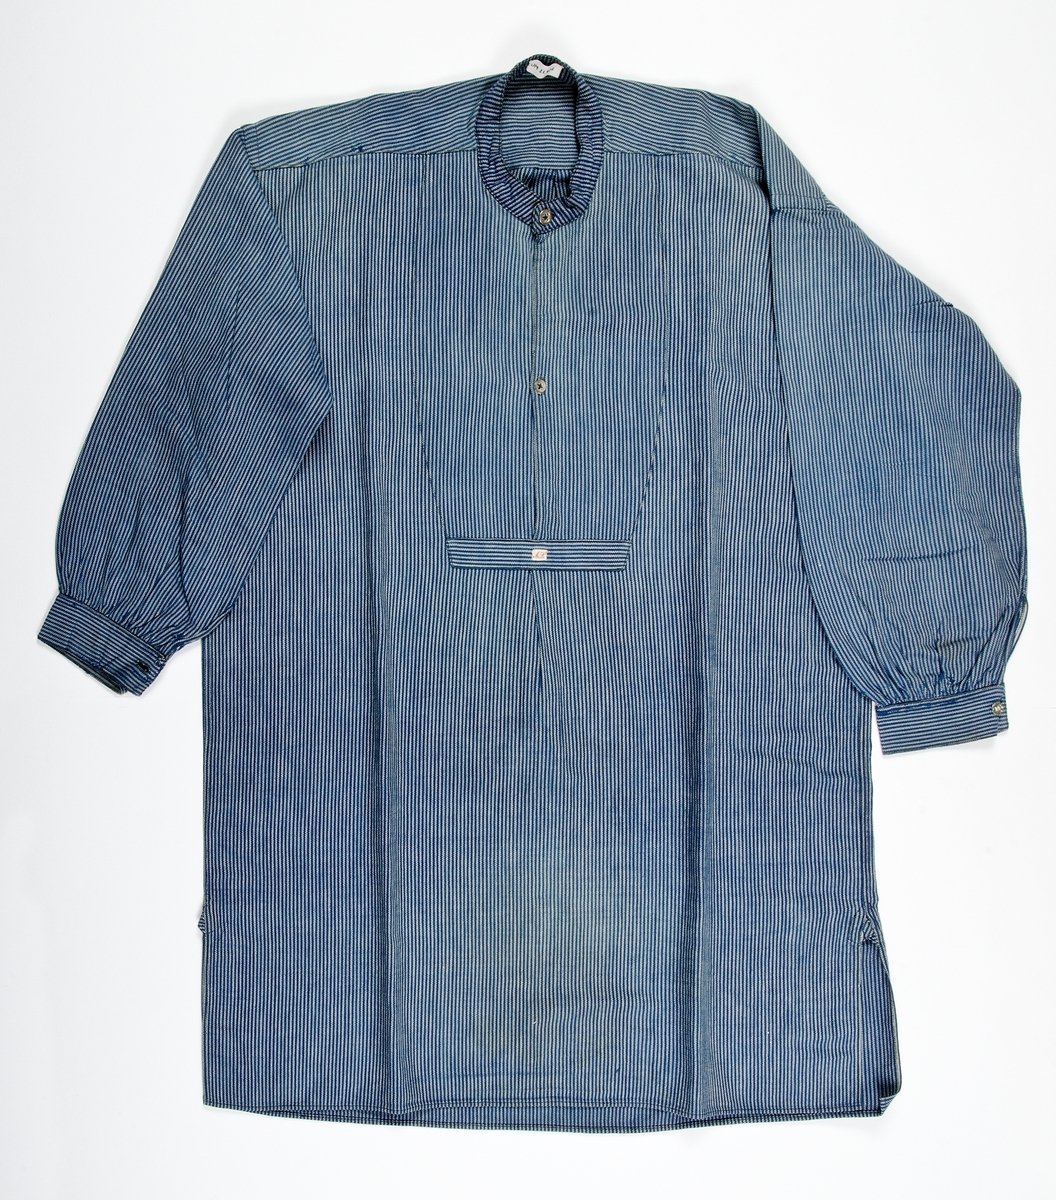 Skjorta av blåvit-randig bomullskypert. Rak med axelok och med sprund fram och dubbelt tyg i bröstpartiet avslutat med tvärslå, två metallknappar och ståkrage. Lång ärm med ärmspjäll och manschett med knapp.